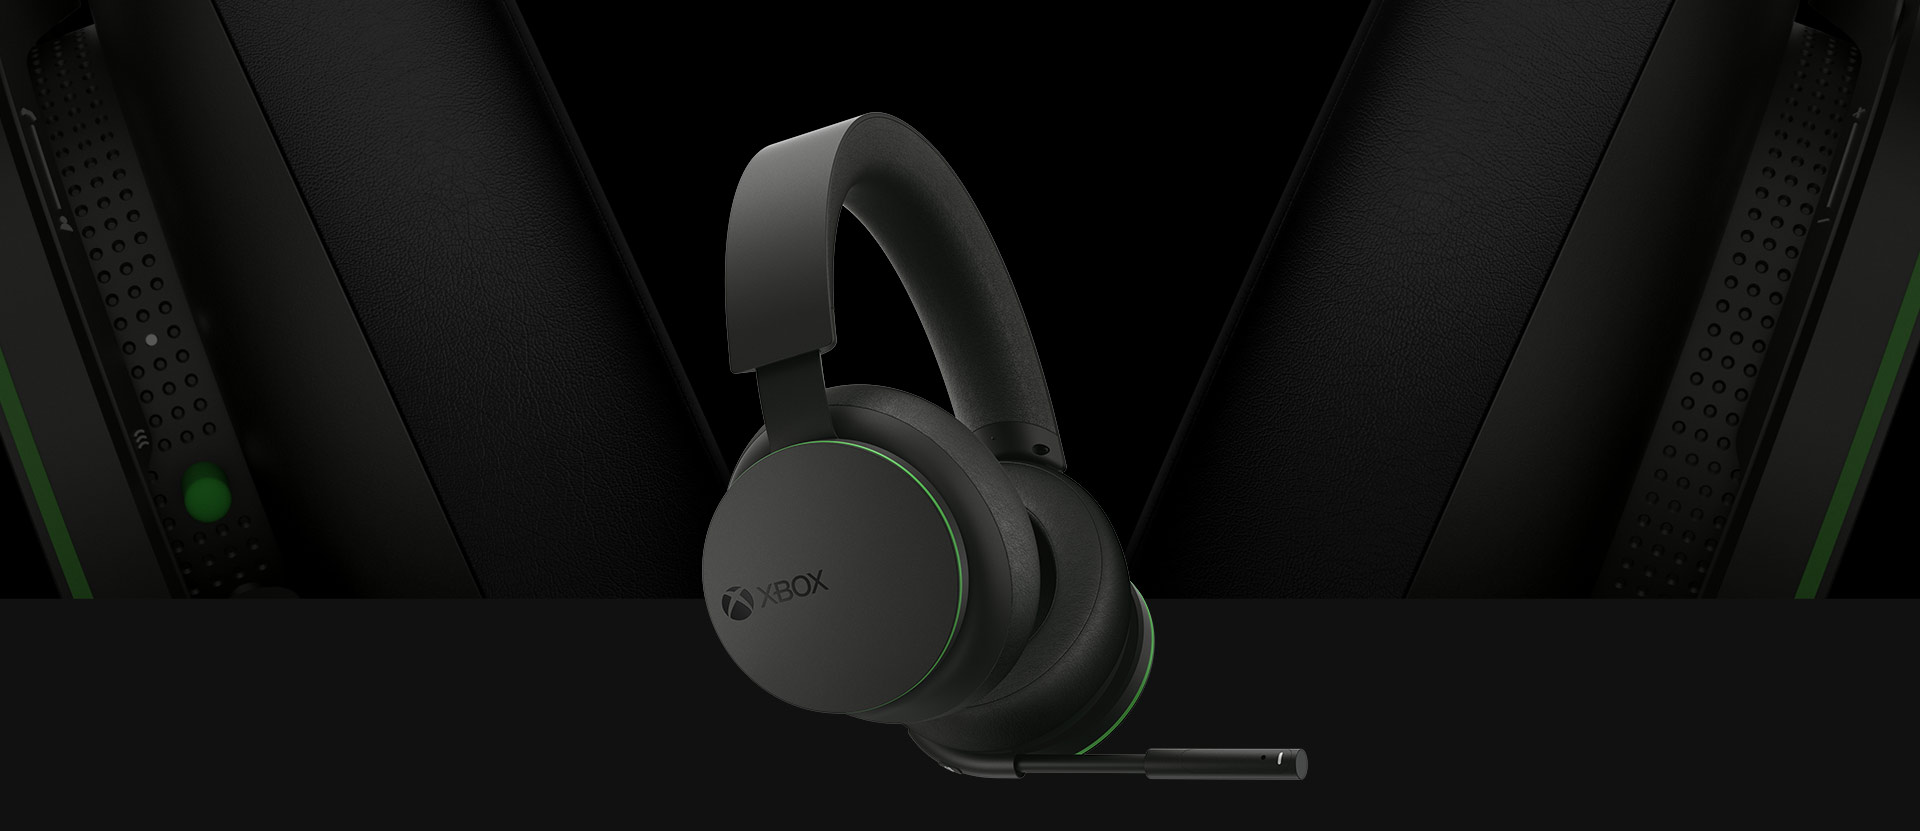 Schräge Frontansicht des Xbox Wireless Headsets. Eine größere Detailansicht der Ohrschalen ist hinter dem Headset abgebildet.